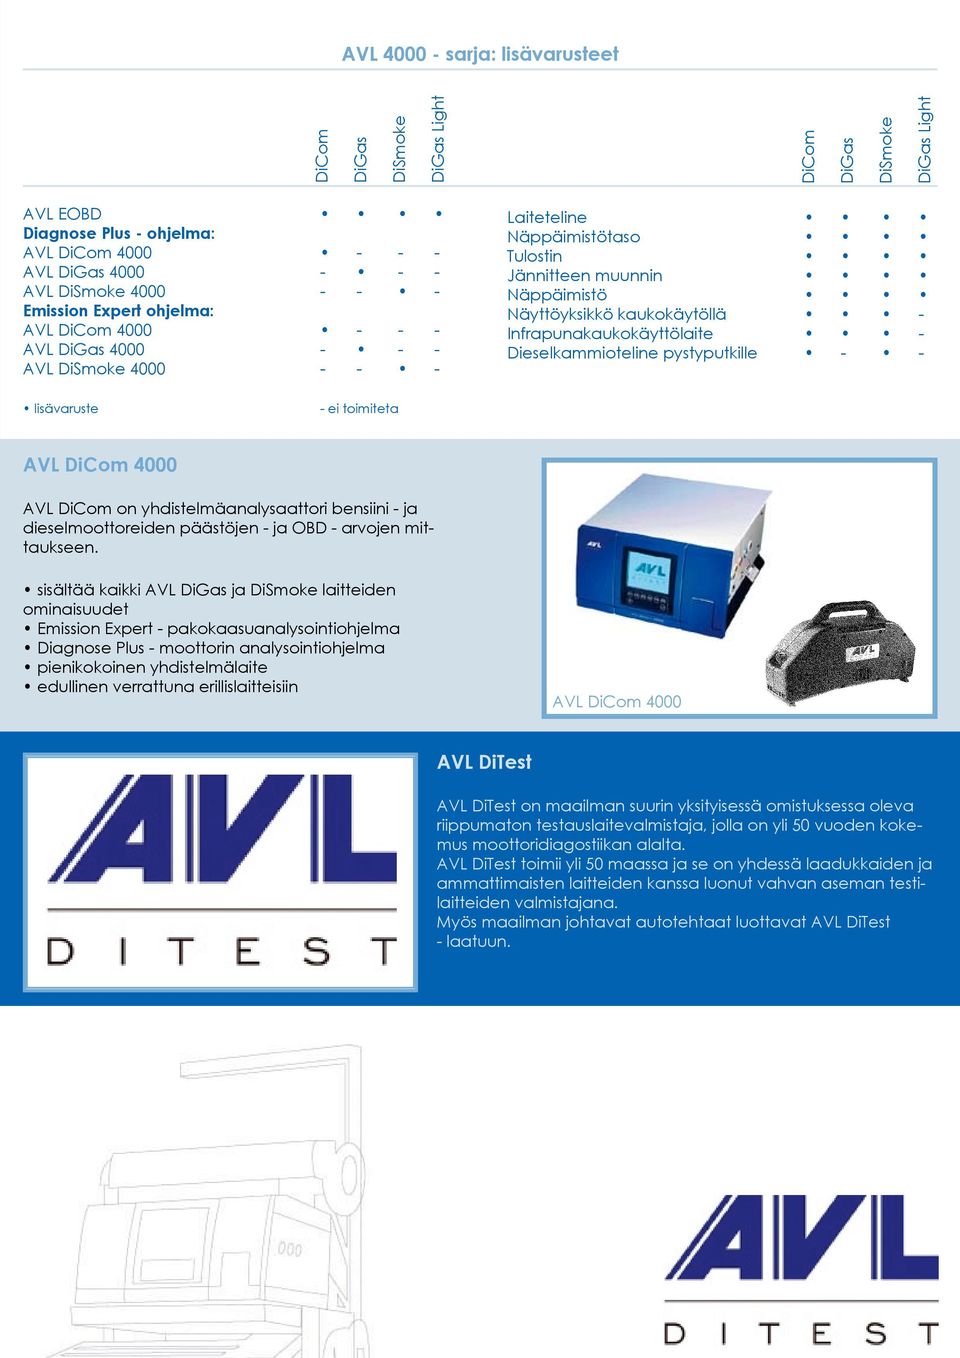 AVL on yhdistelmäanalysaattori bensiini - ja dieselmoottoreiden päästöjen - ja OBD - arvojen mittaukseen.